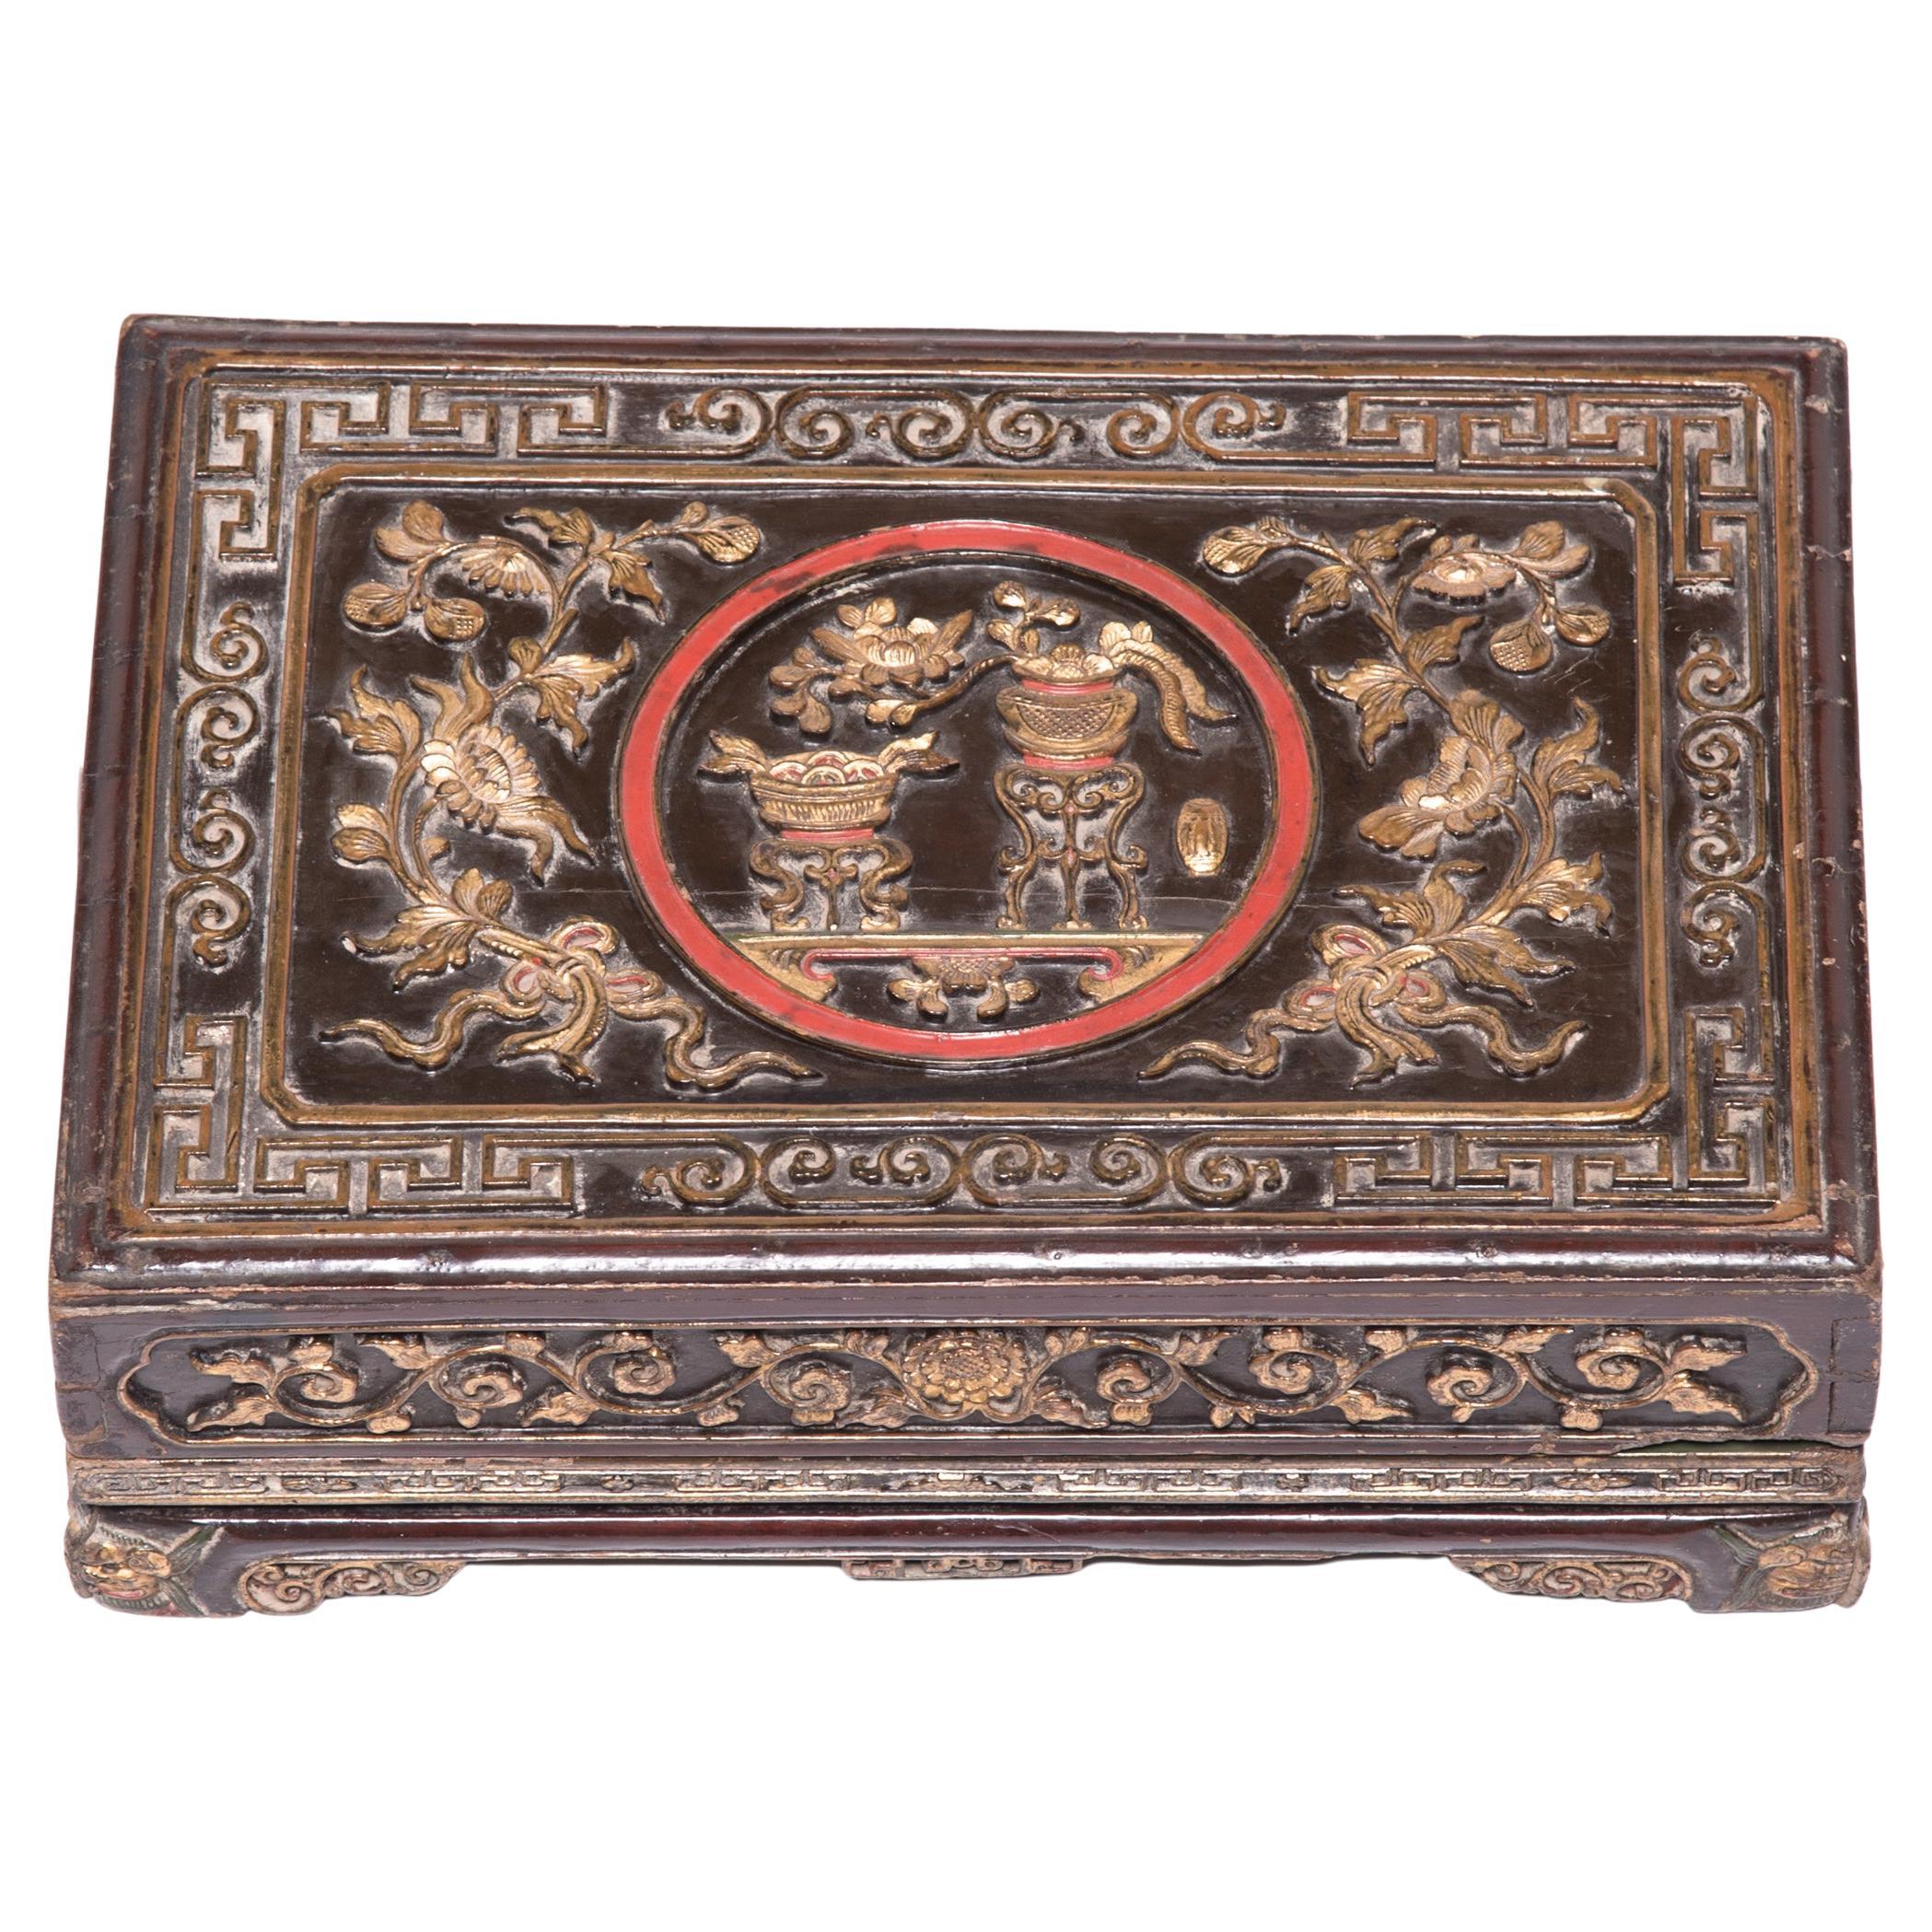 Chinesische Eternal Love Offering Box, um 1800